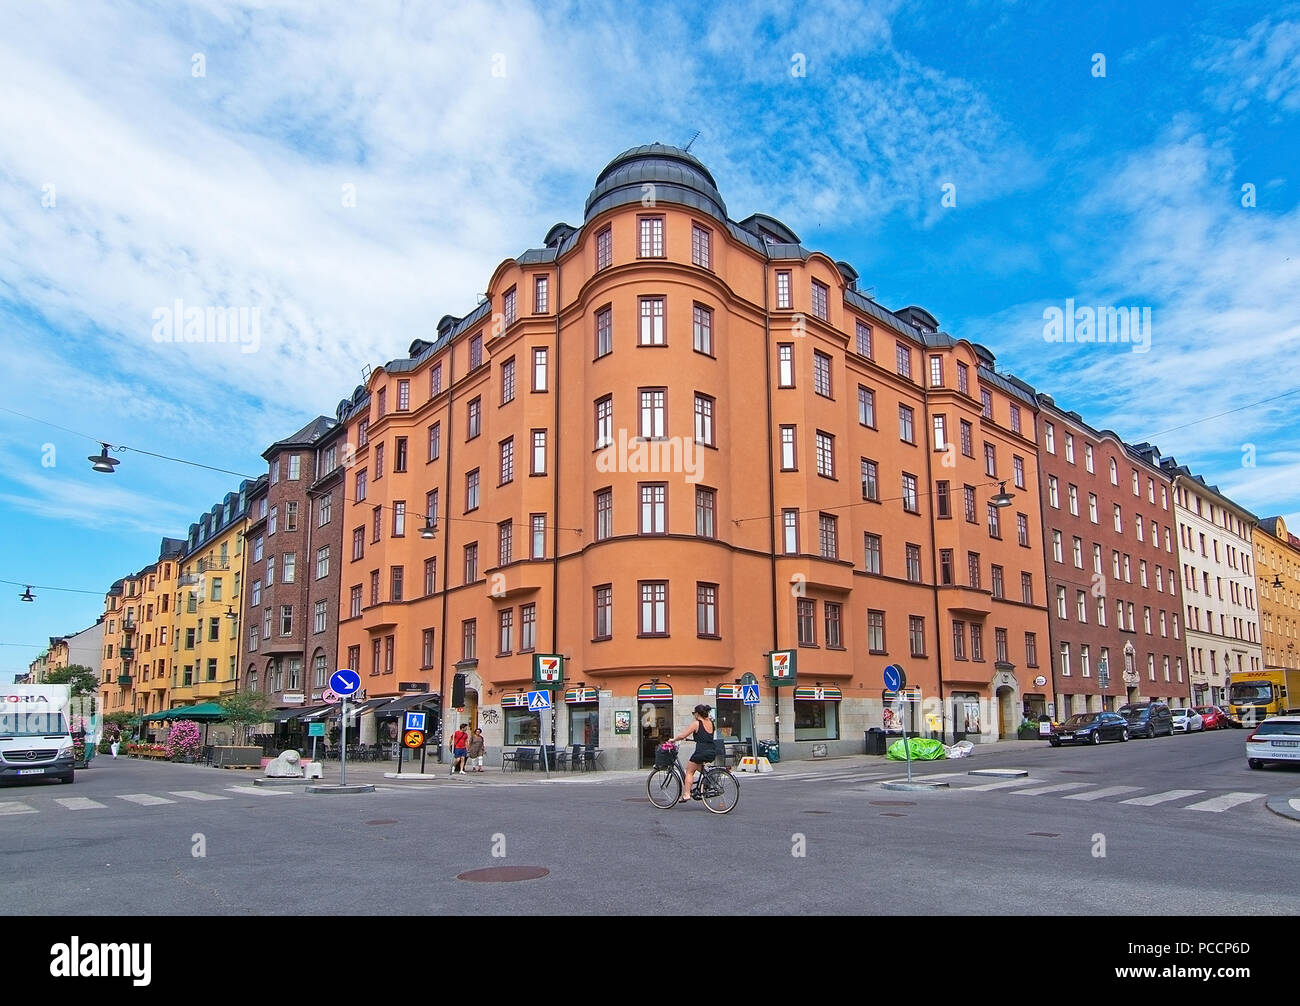 STOCKHOLM, Schweden - 11. JULI 2018: Vasastan typische jahrhundert alte Gebäude in Gelb reibeputz am 11. Juli 2018 in Stockholm, Schweden. Stockfoto